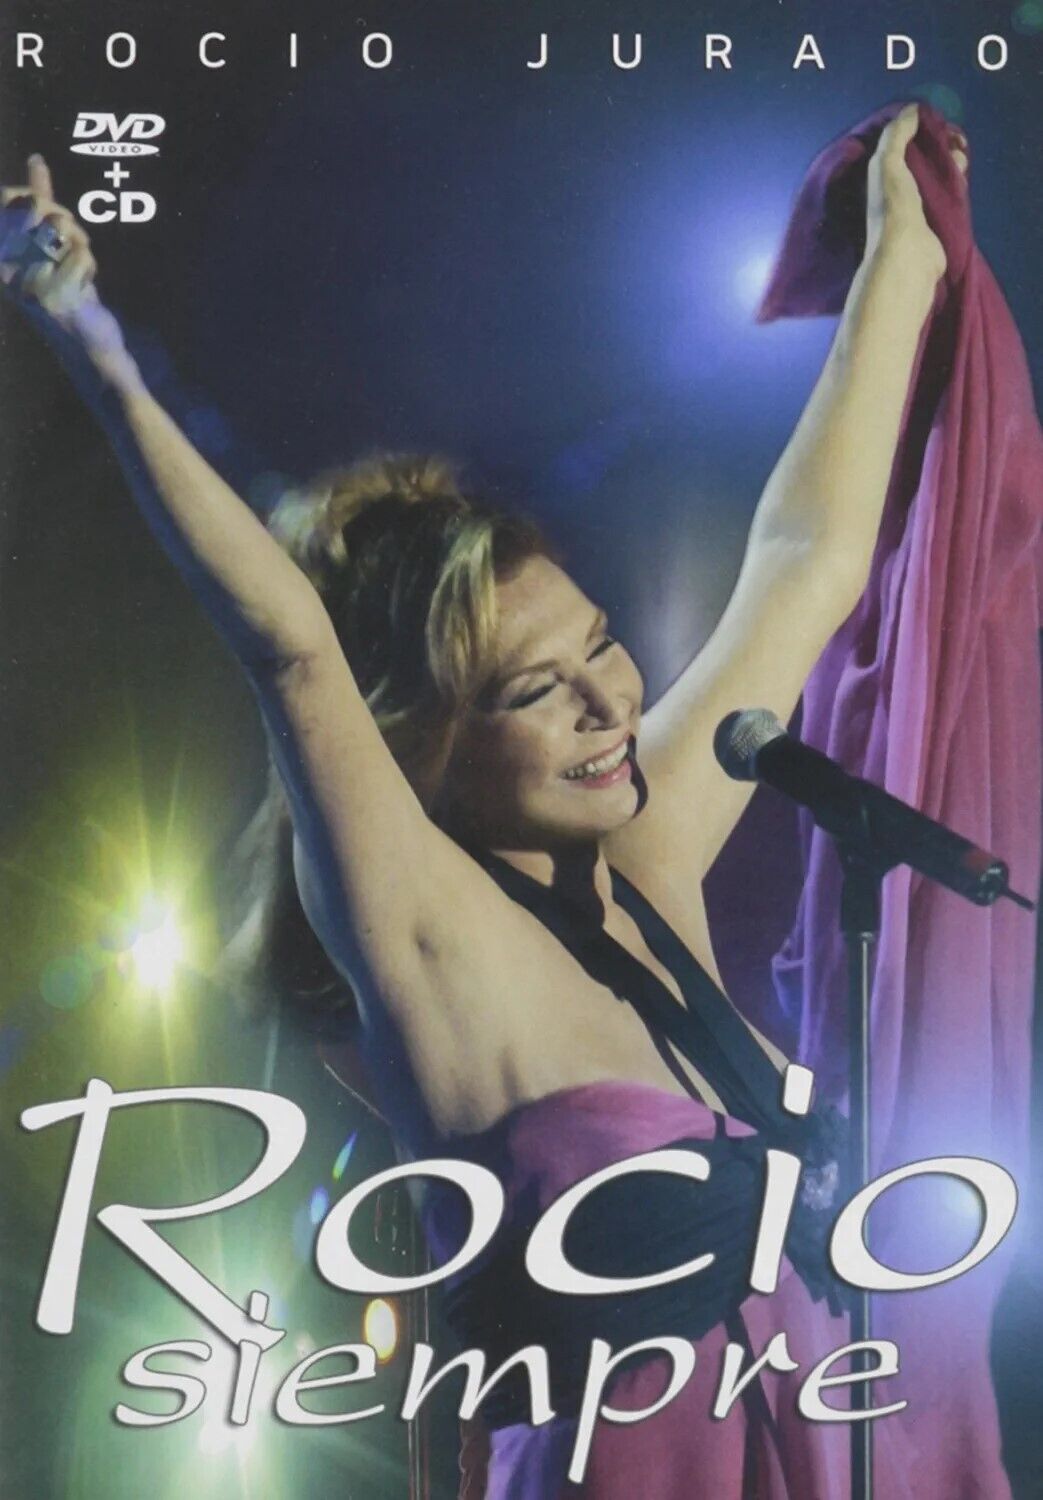 DVD+CD Rocio Siempre - Rocio Jurado